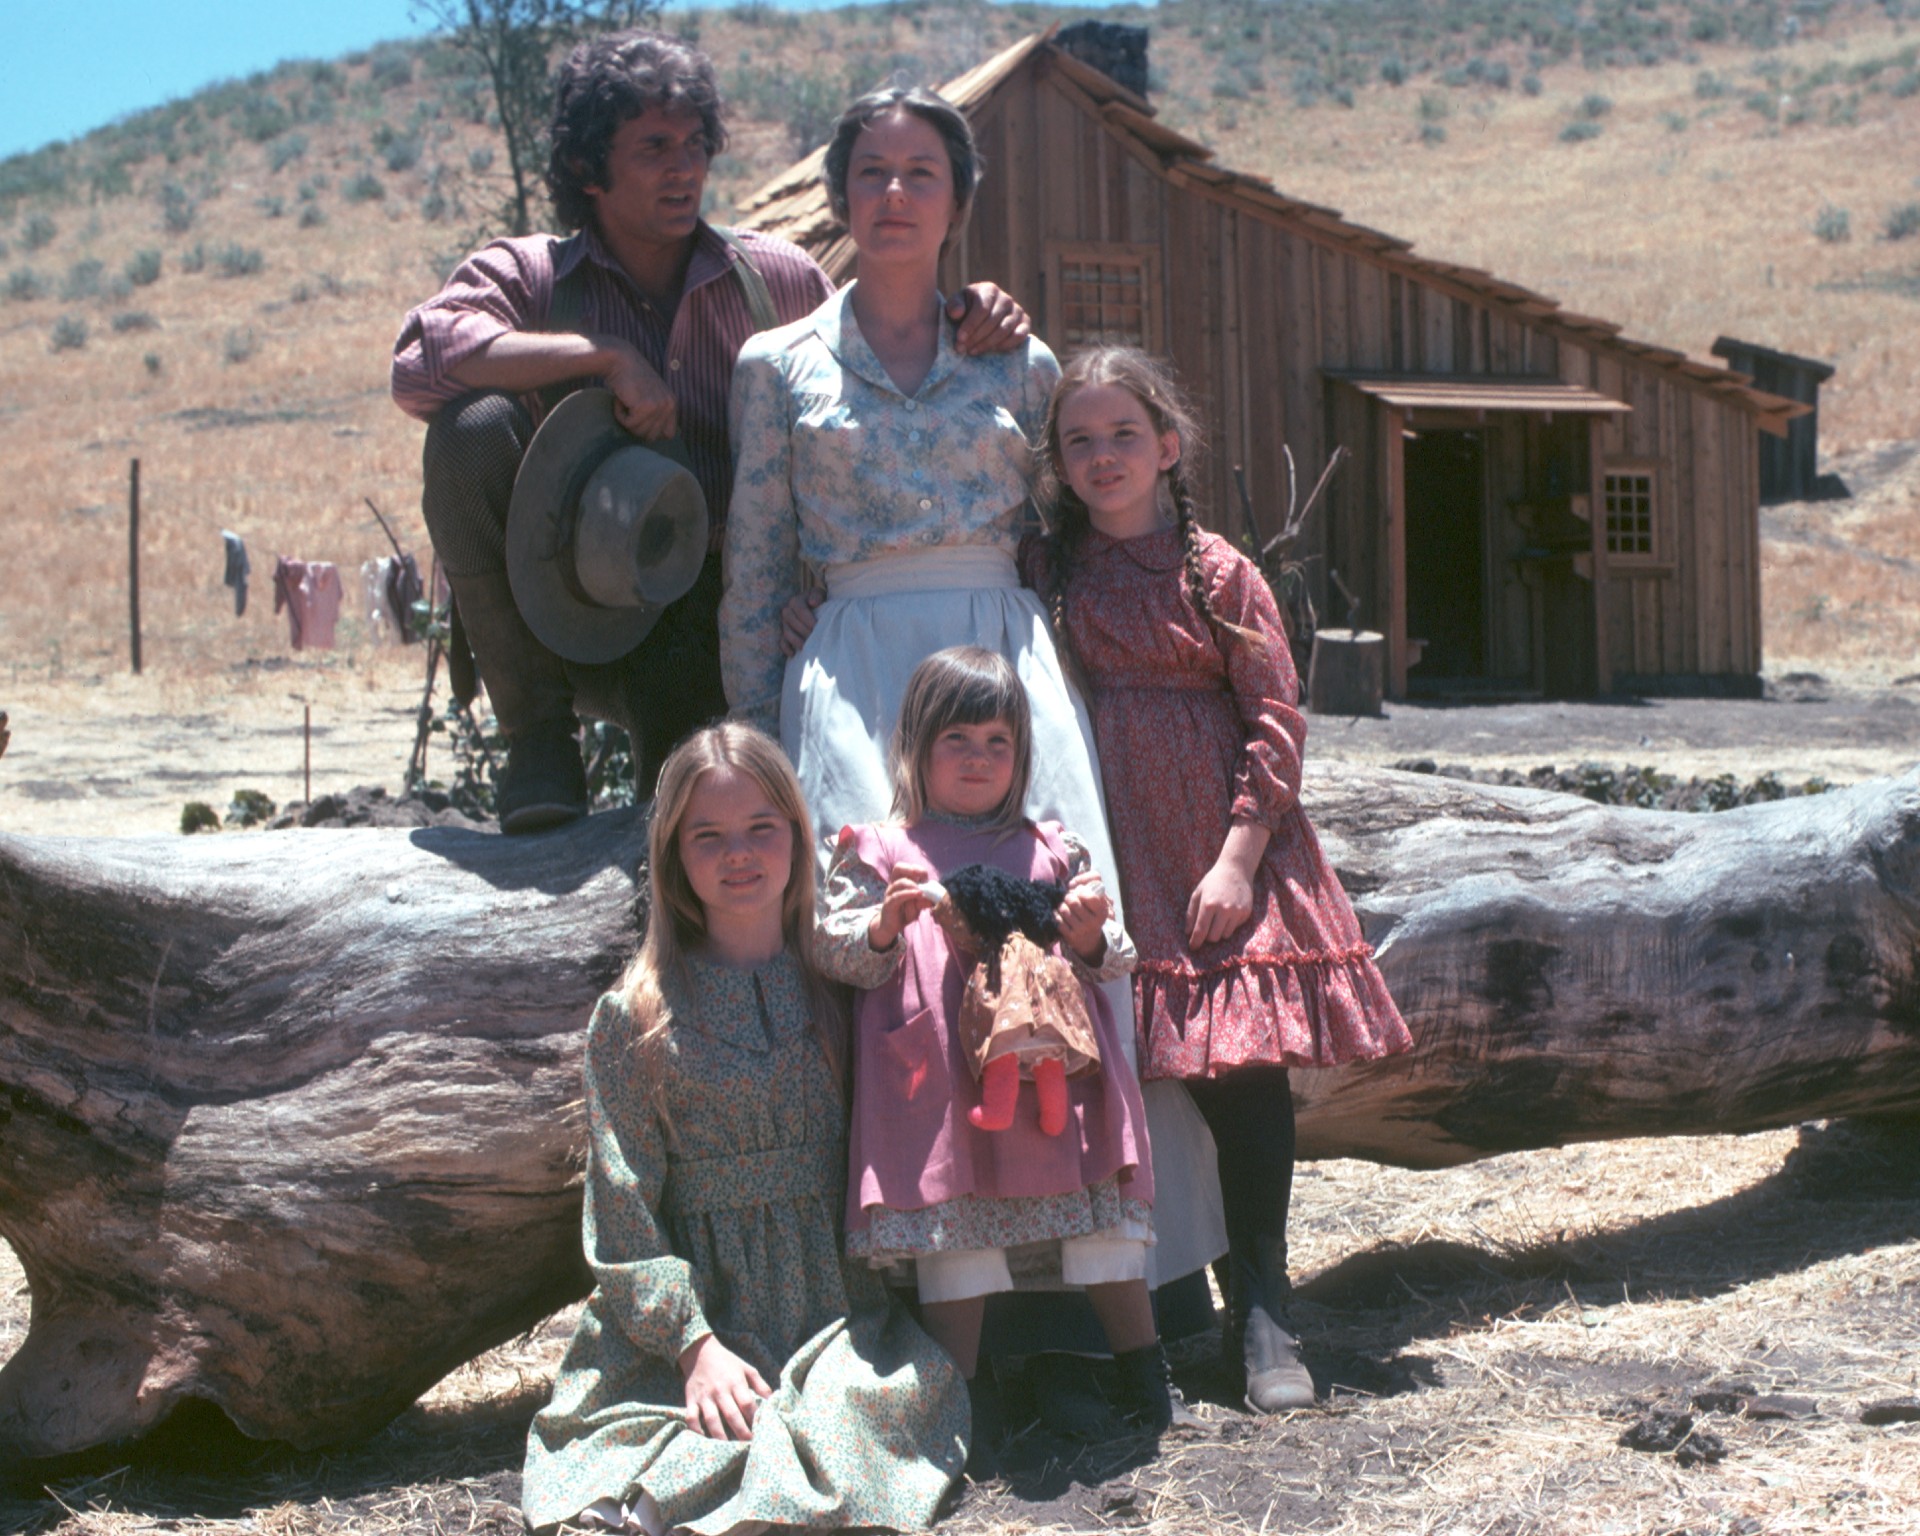 The Little House on the Prairie cast